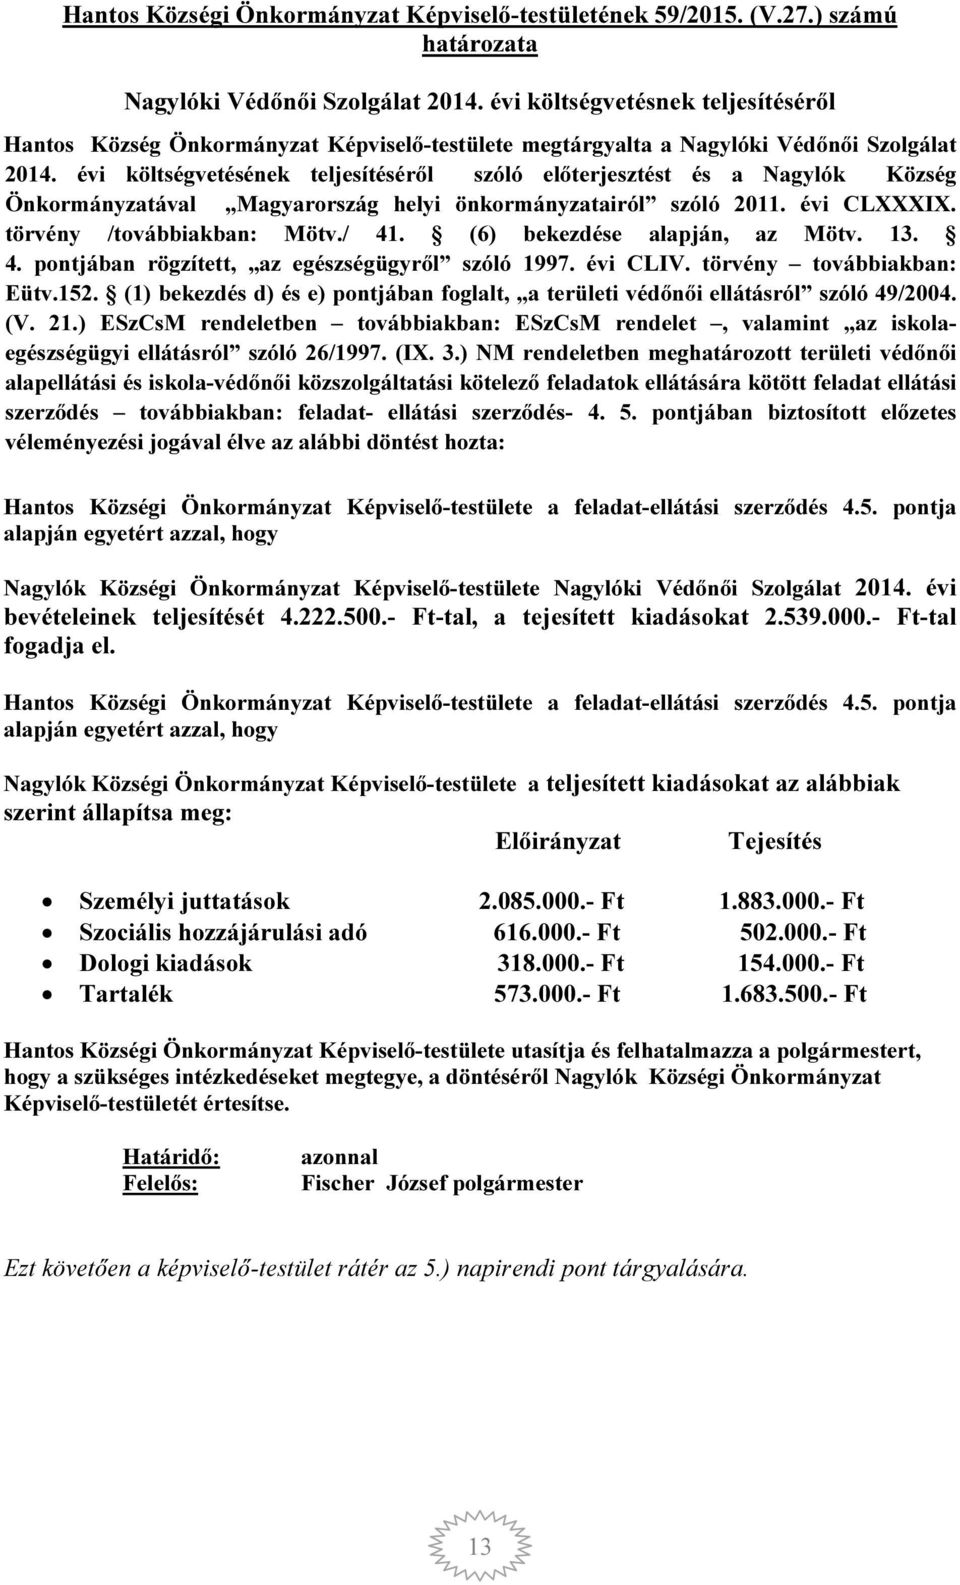 évi költségvetésének teljesítéséről szóló előterjesztést és a Nagylók Község Önkormányzatával Magyarország helyi önkormányzatairól szóló 2011. évi CLXXXIX. törvény /továbbiakban: Mötv./ 41.